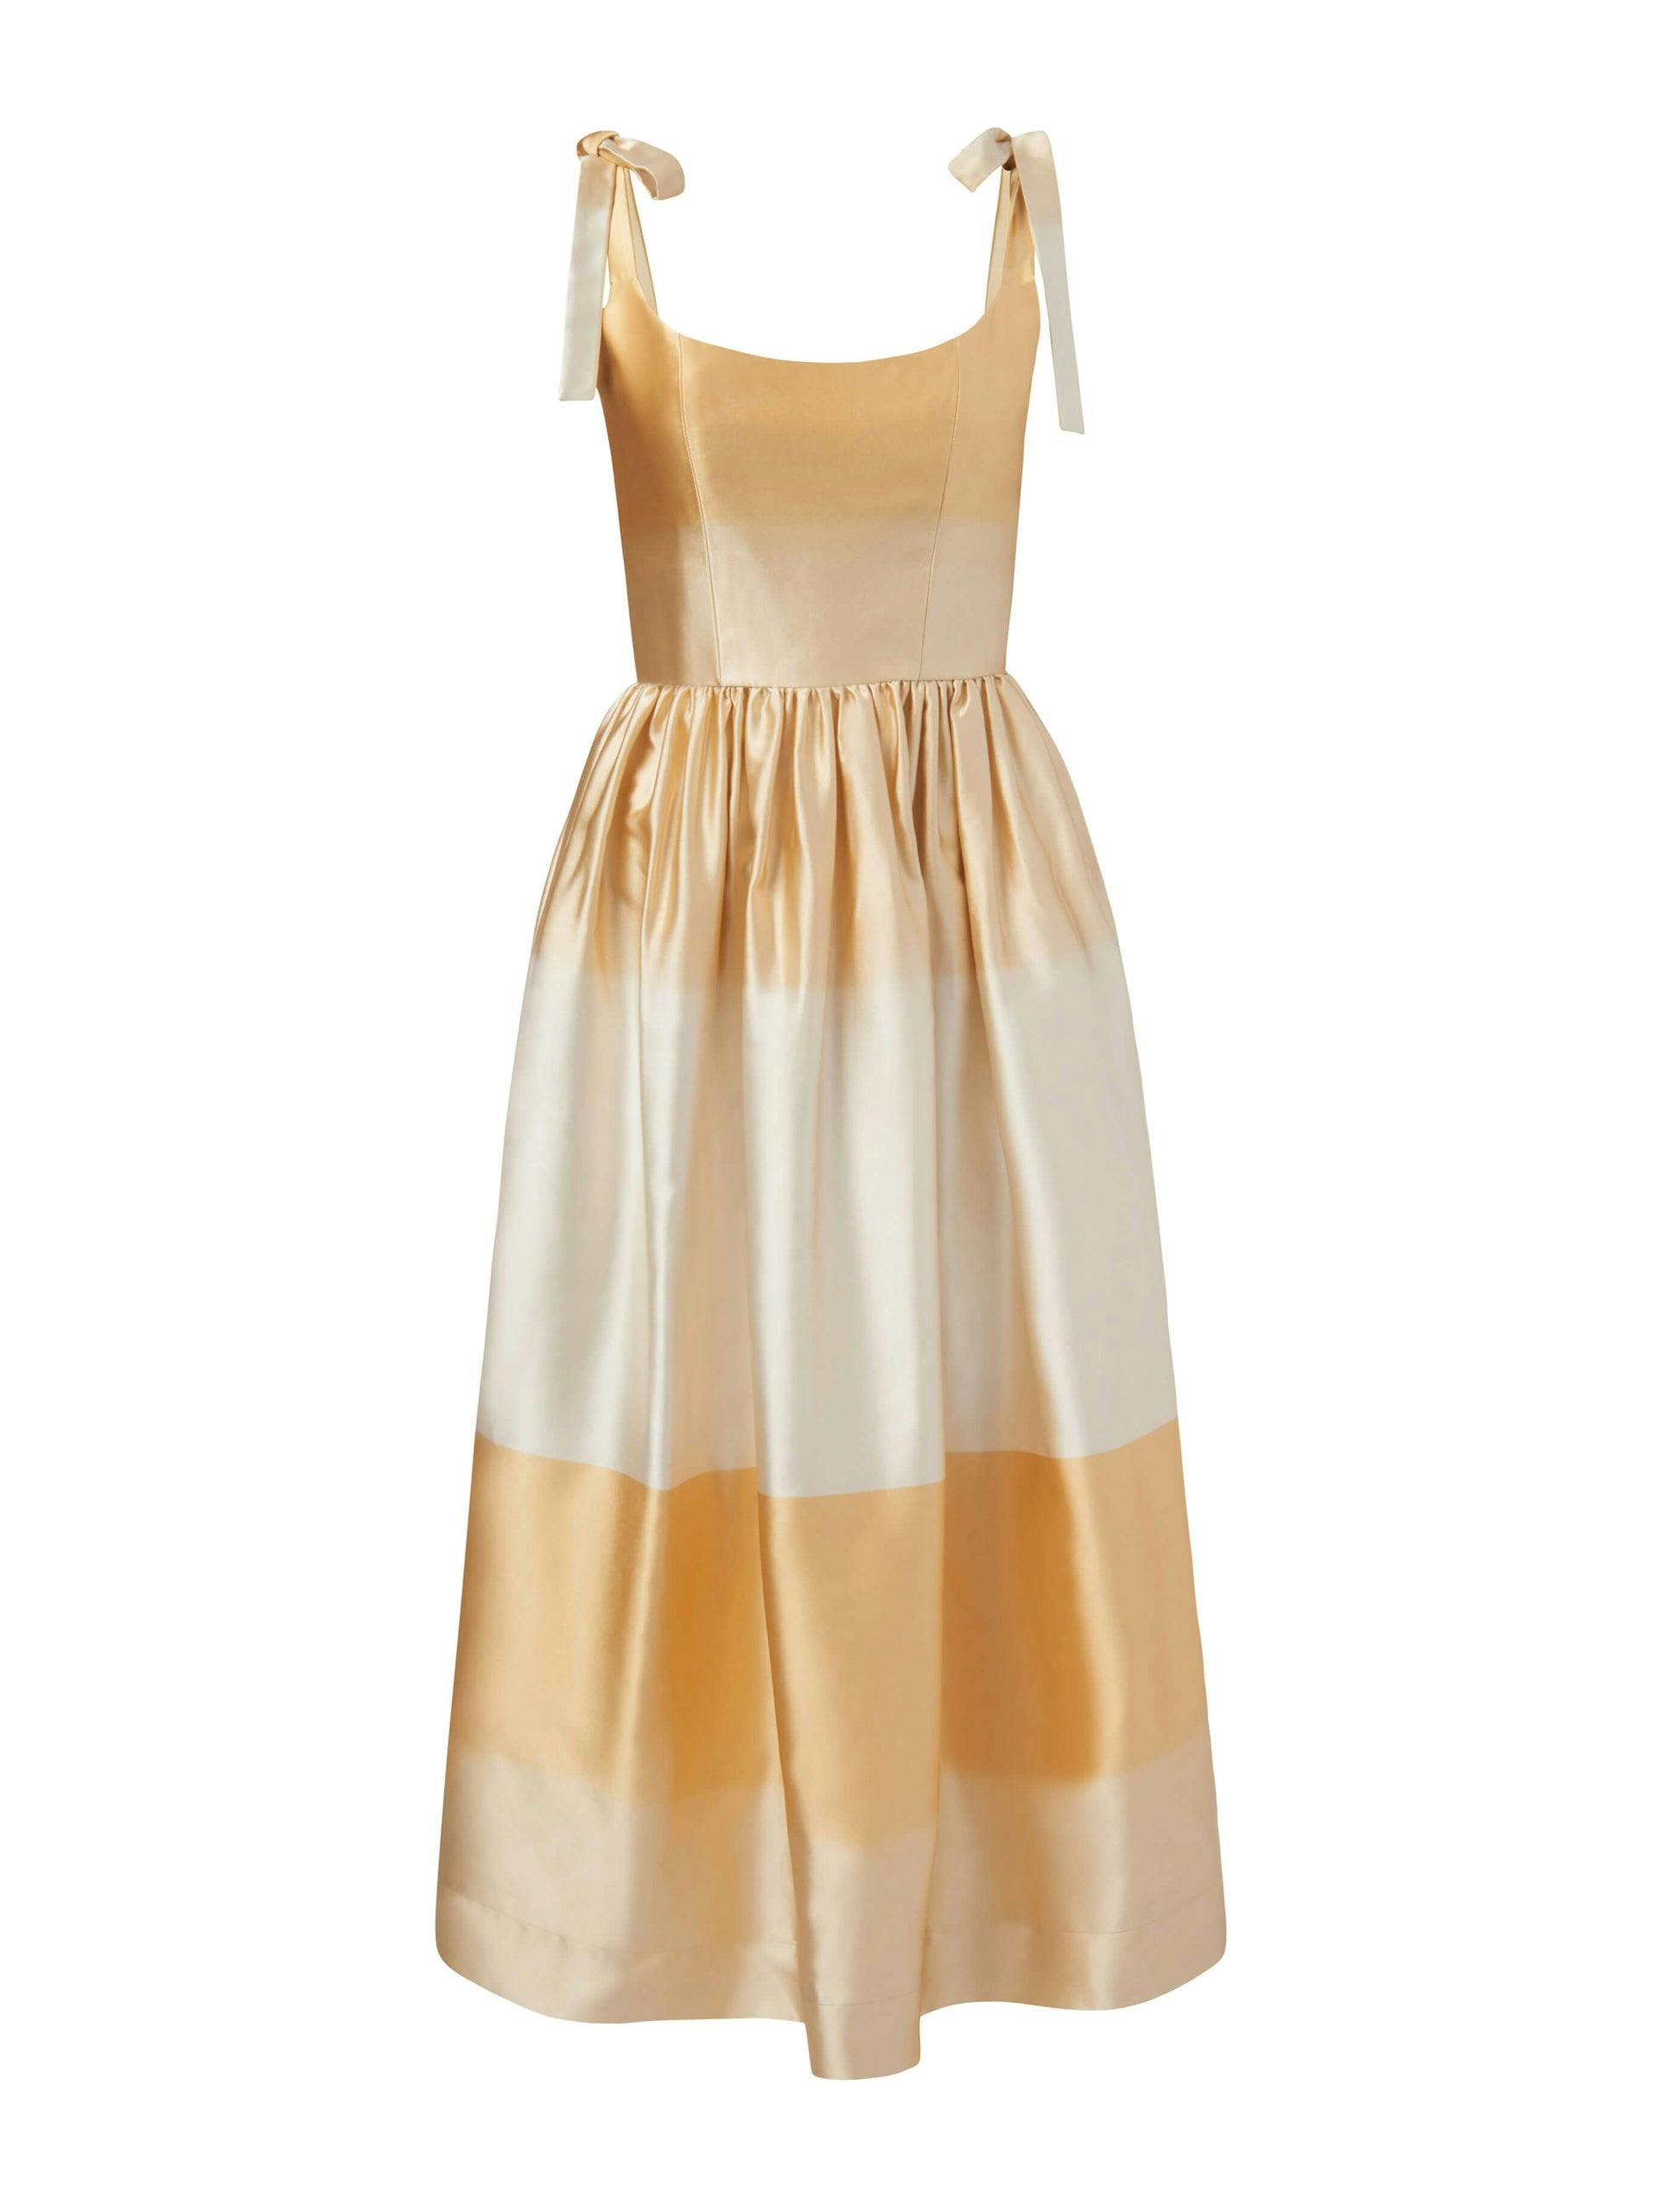 Apple golden ombré dress